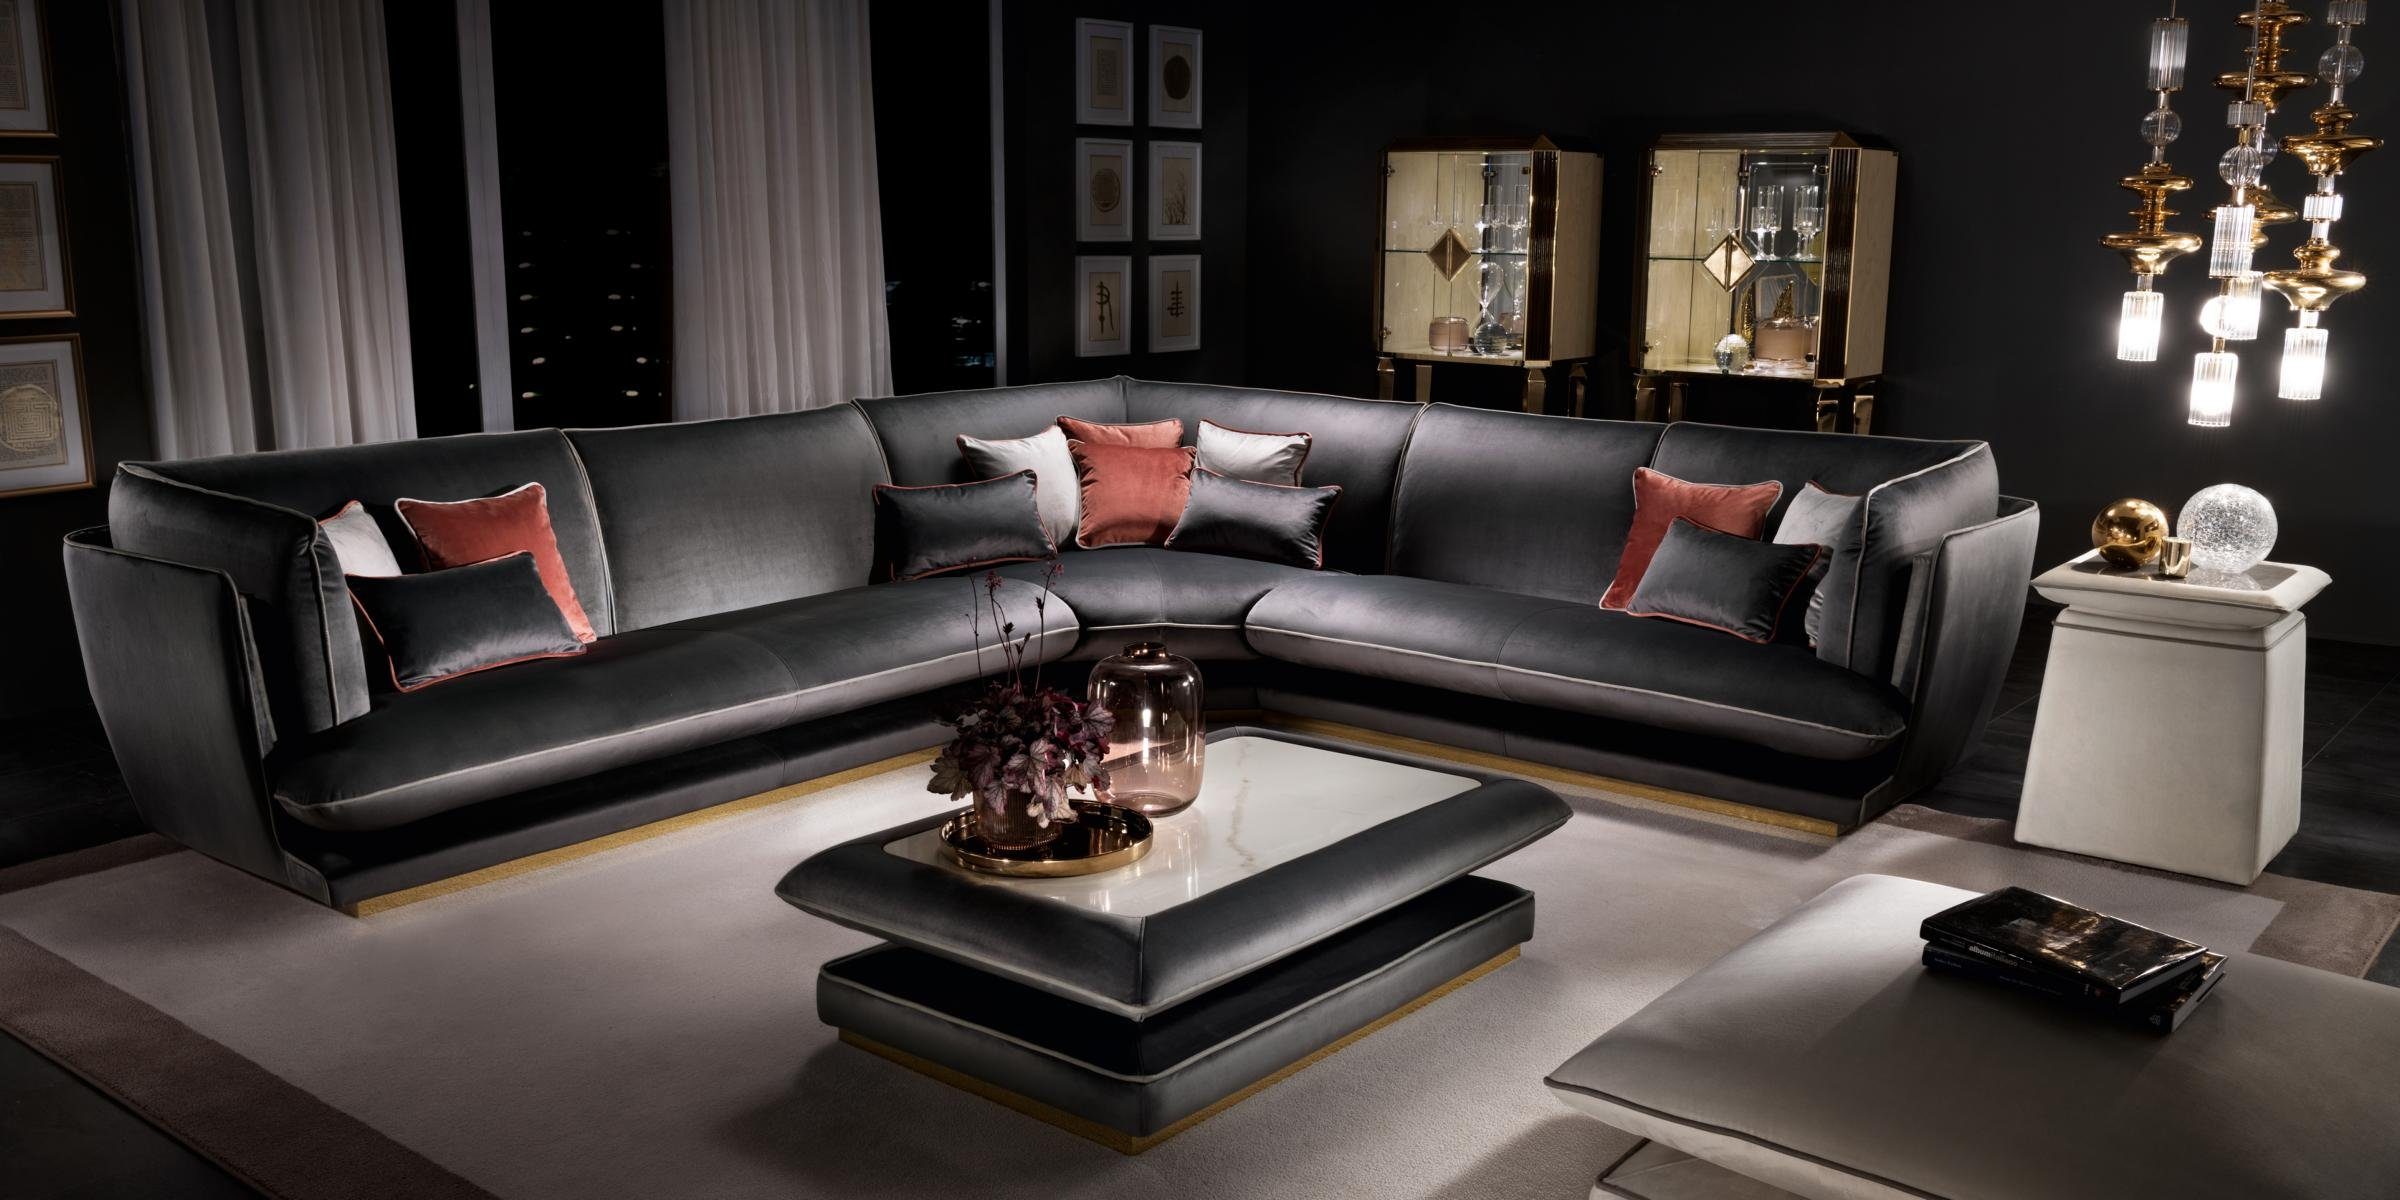 JVmoebel Ecksofa Schwarzes Sofa Luxus Wohnlandschaft in L-Form Made Europe Arredoclassic, Couch